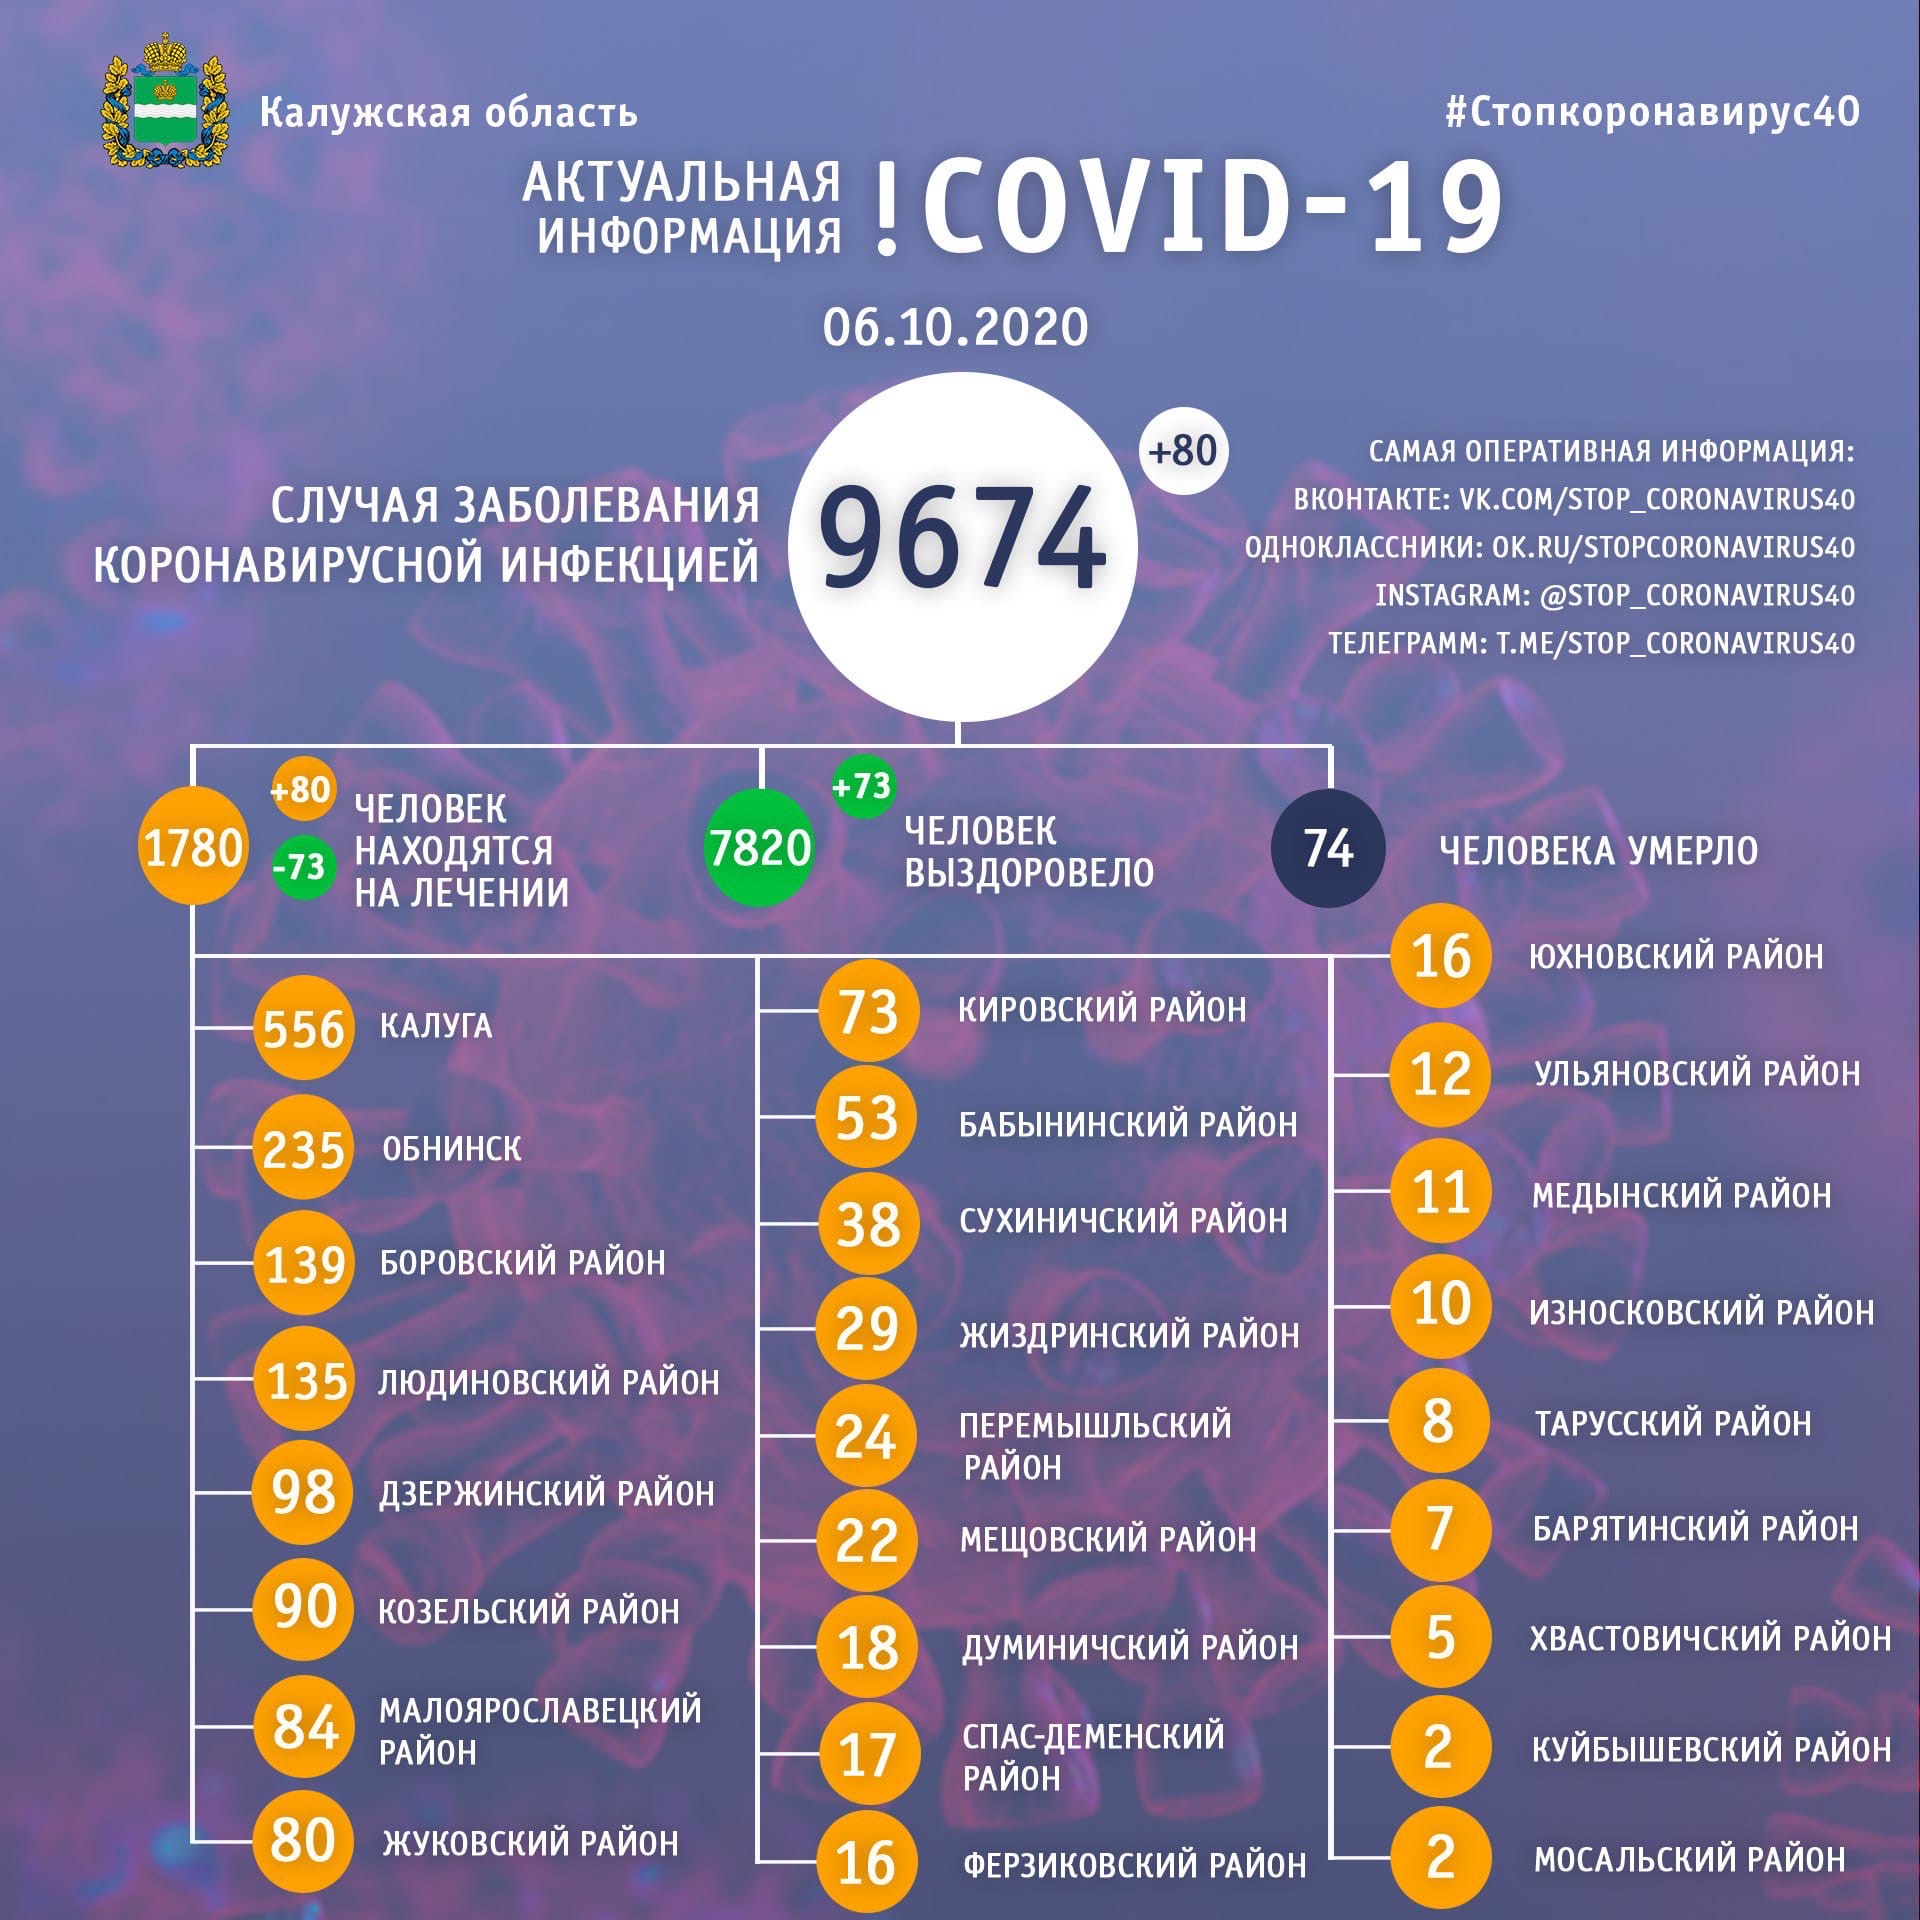 Официальная статистика по коронавирусу в Калужской области на 6 октября 2020 года.